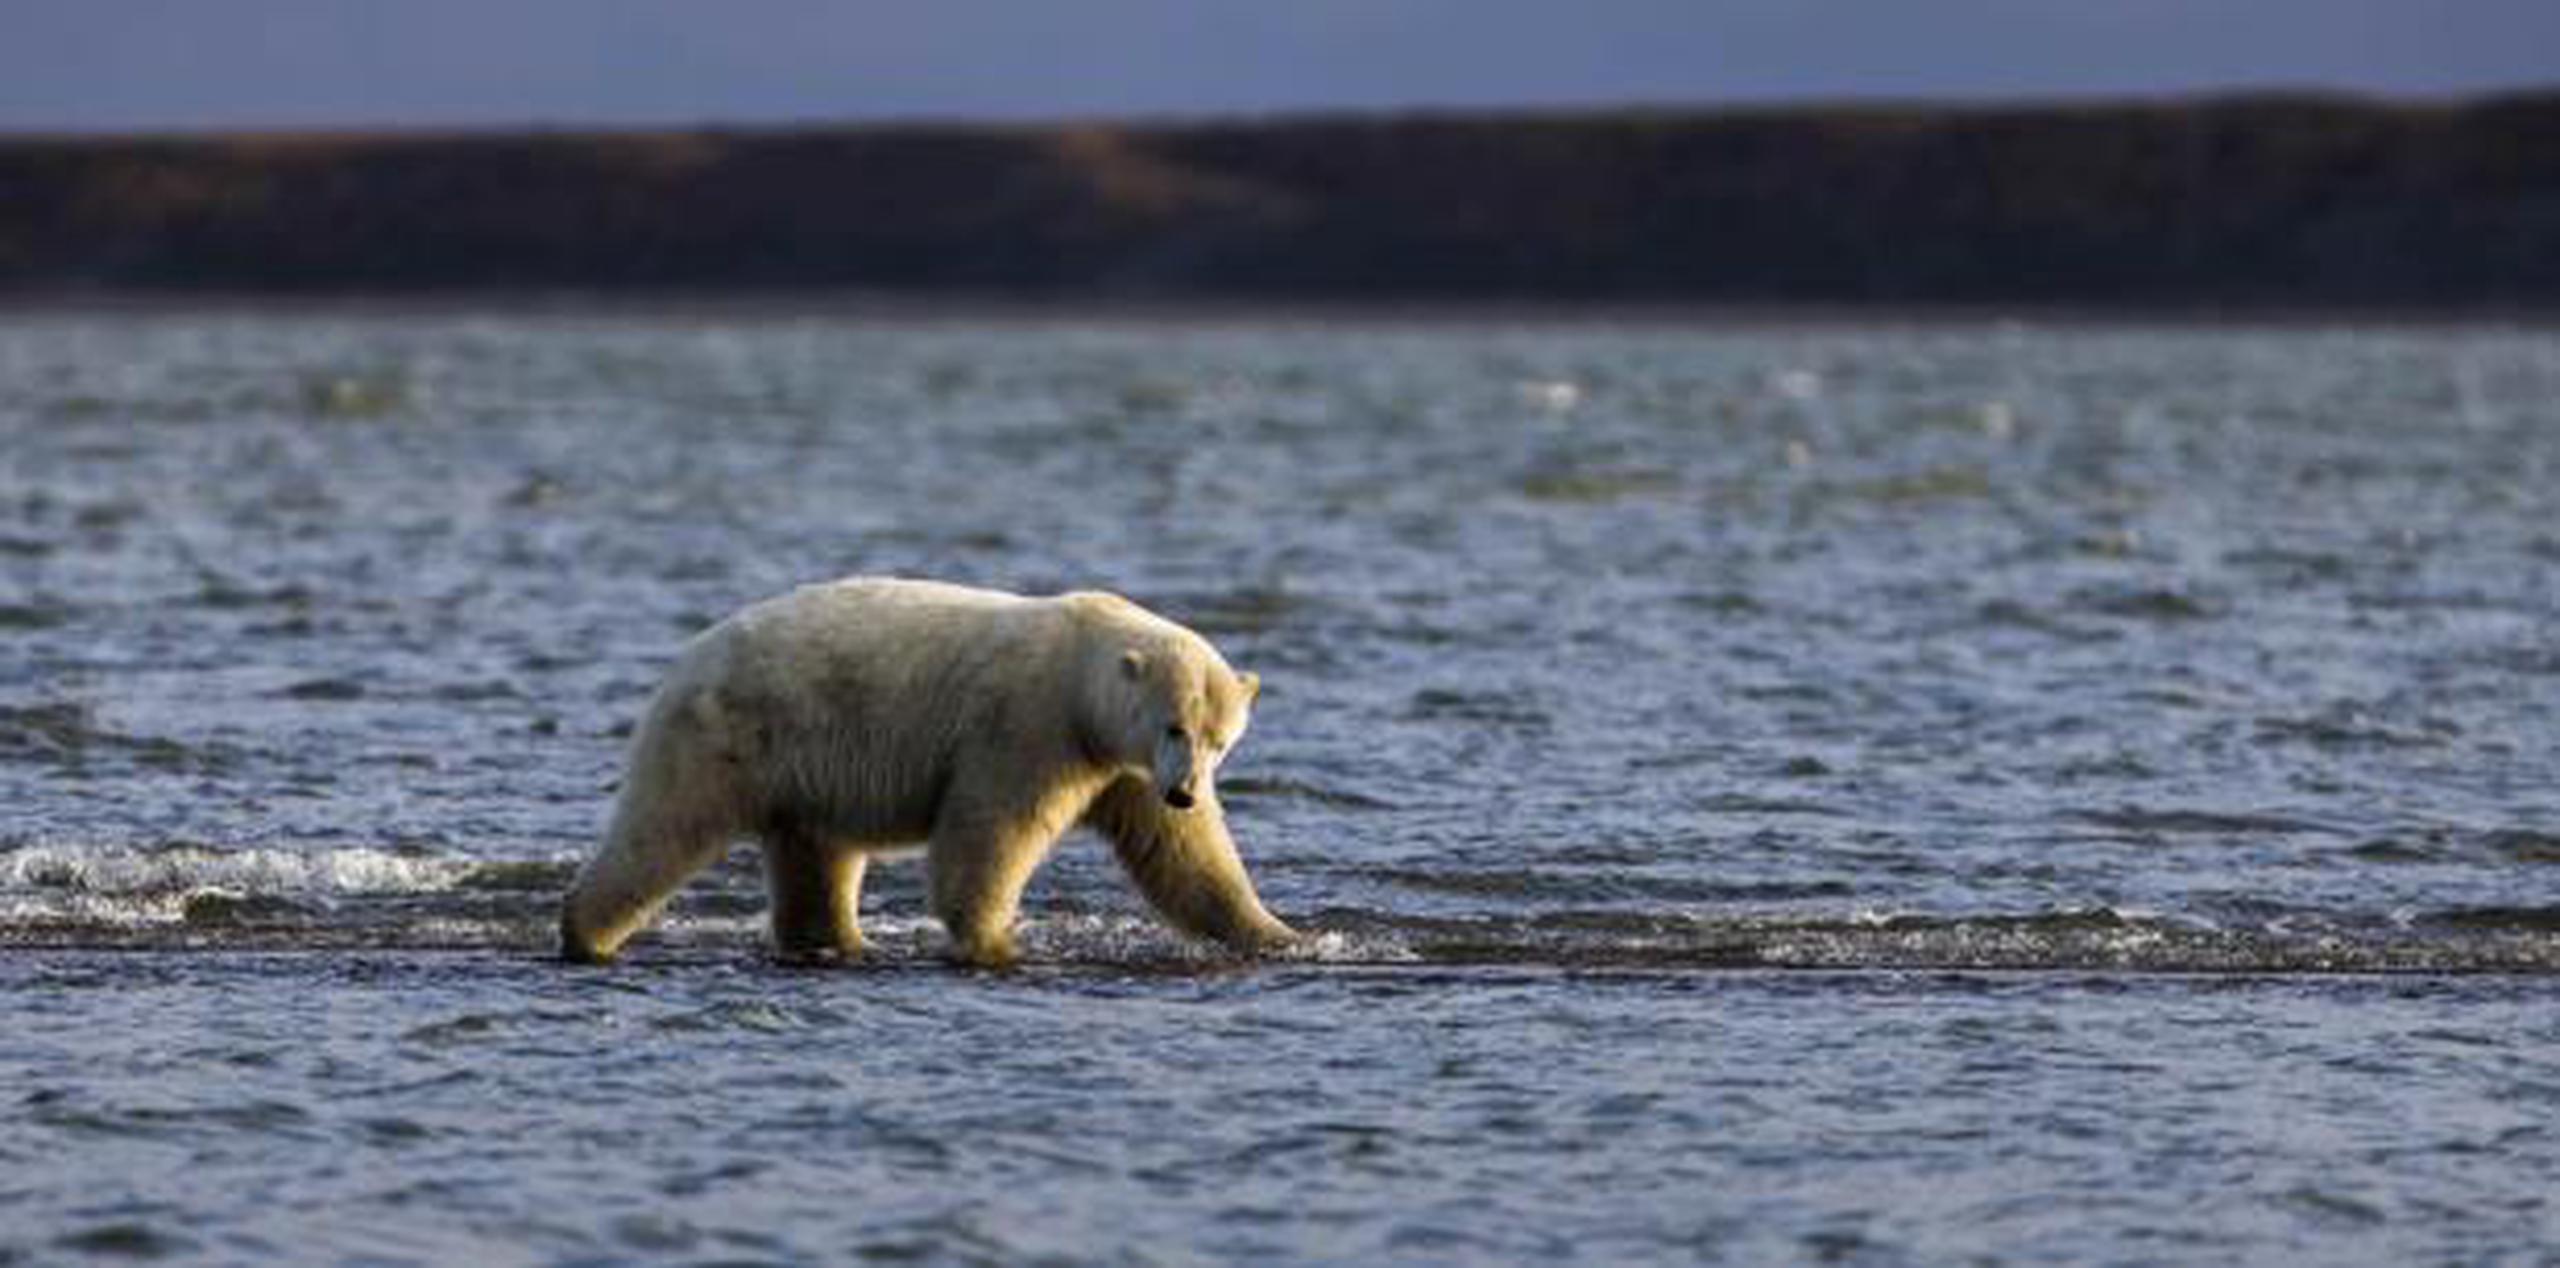 Varias especies como el oso polar están en serio peligro de extinción. Conmueve el alma ver a este hermoso ejemplar moverse millas en busca de alimento.  (EFE/Jim Lo Scalzo)